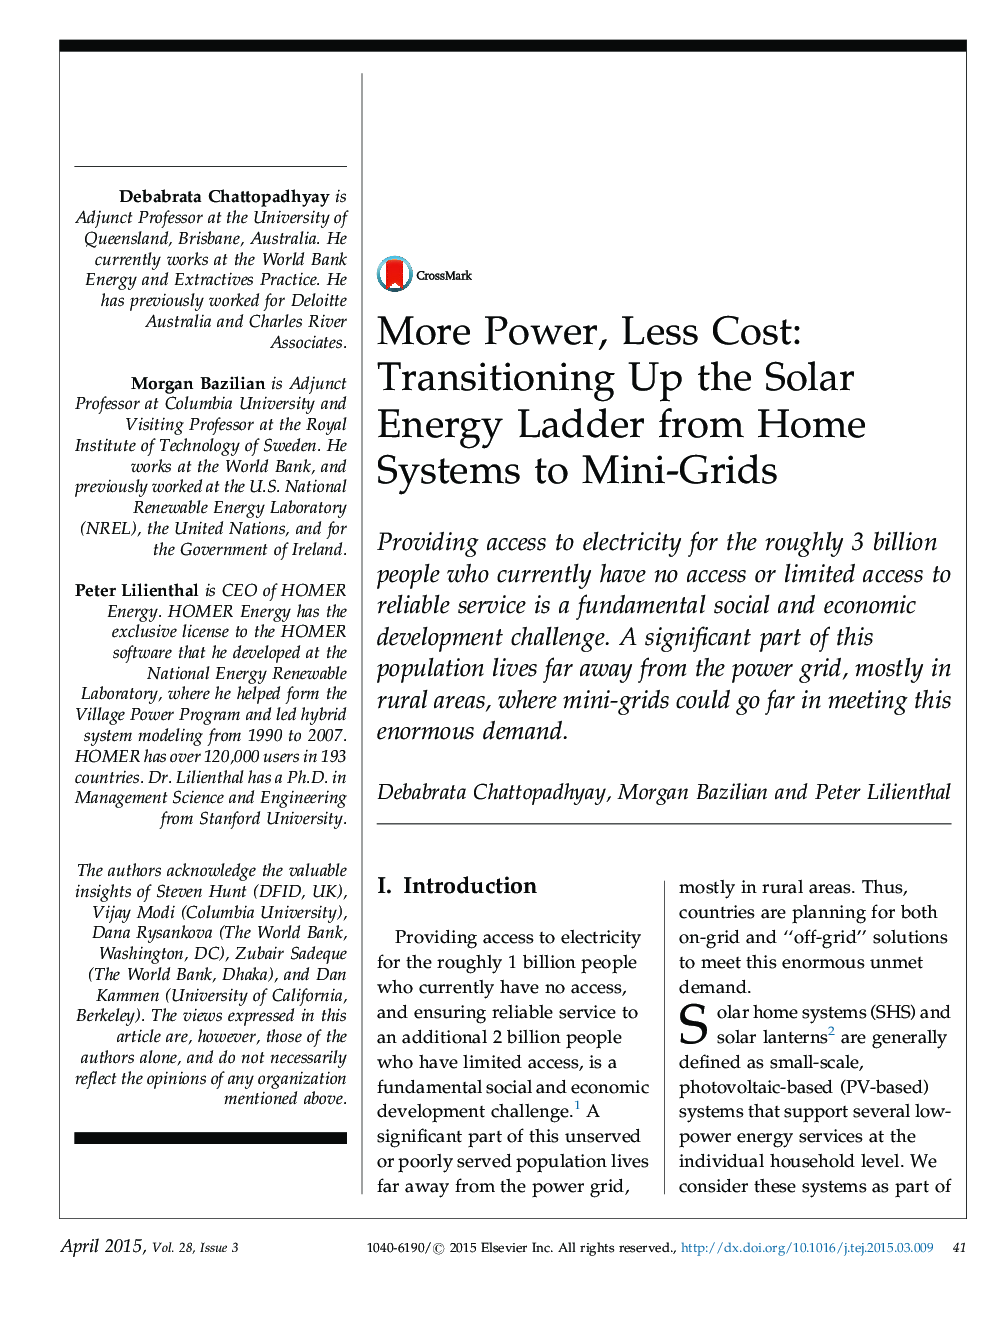 بیشتر قدرت، هزینه کمتر: انتقال انرژی نردبان انرژی خورشیدی از سیستم های خانگی به مینی شبکه 